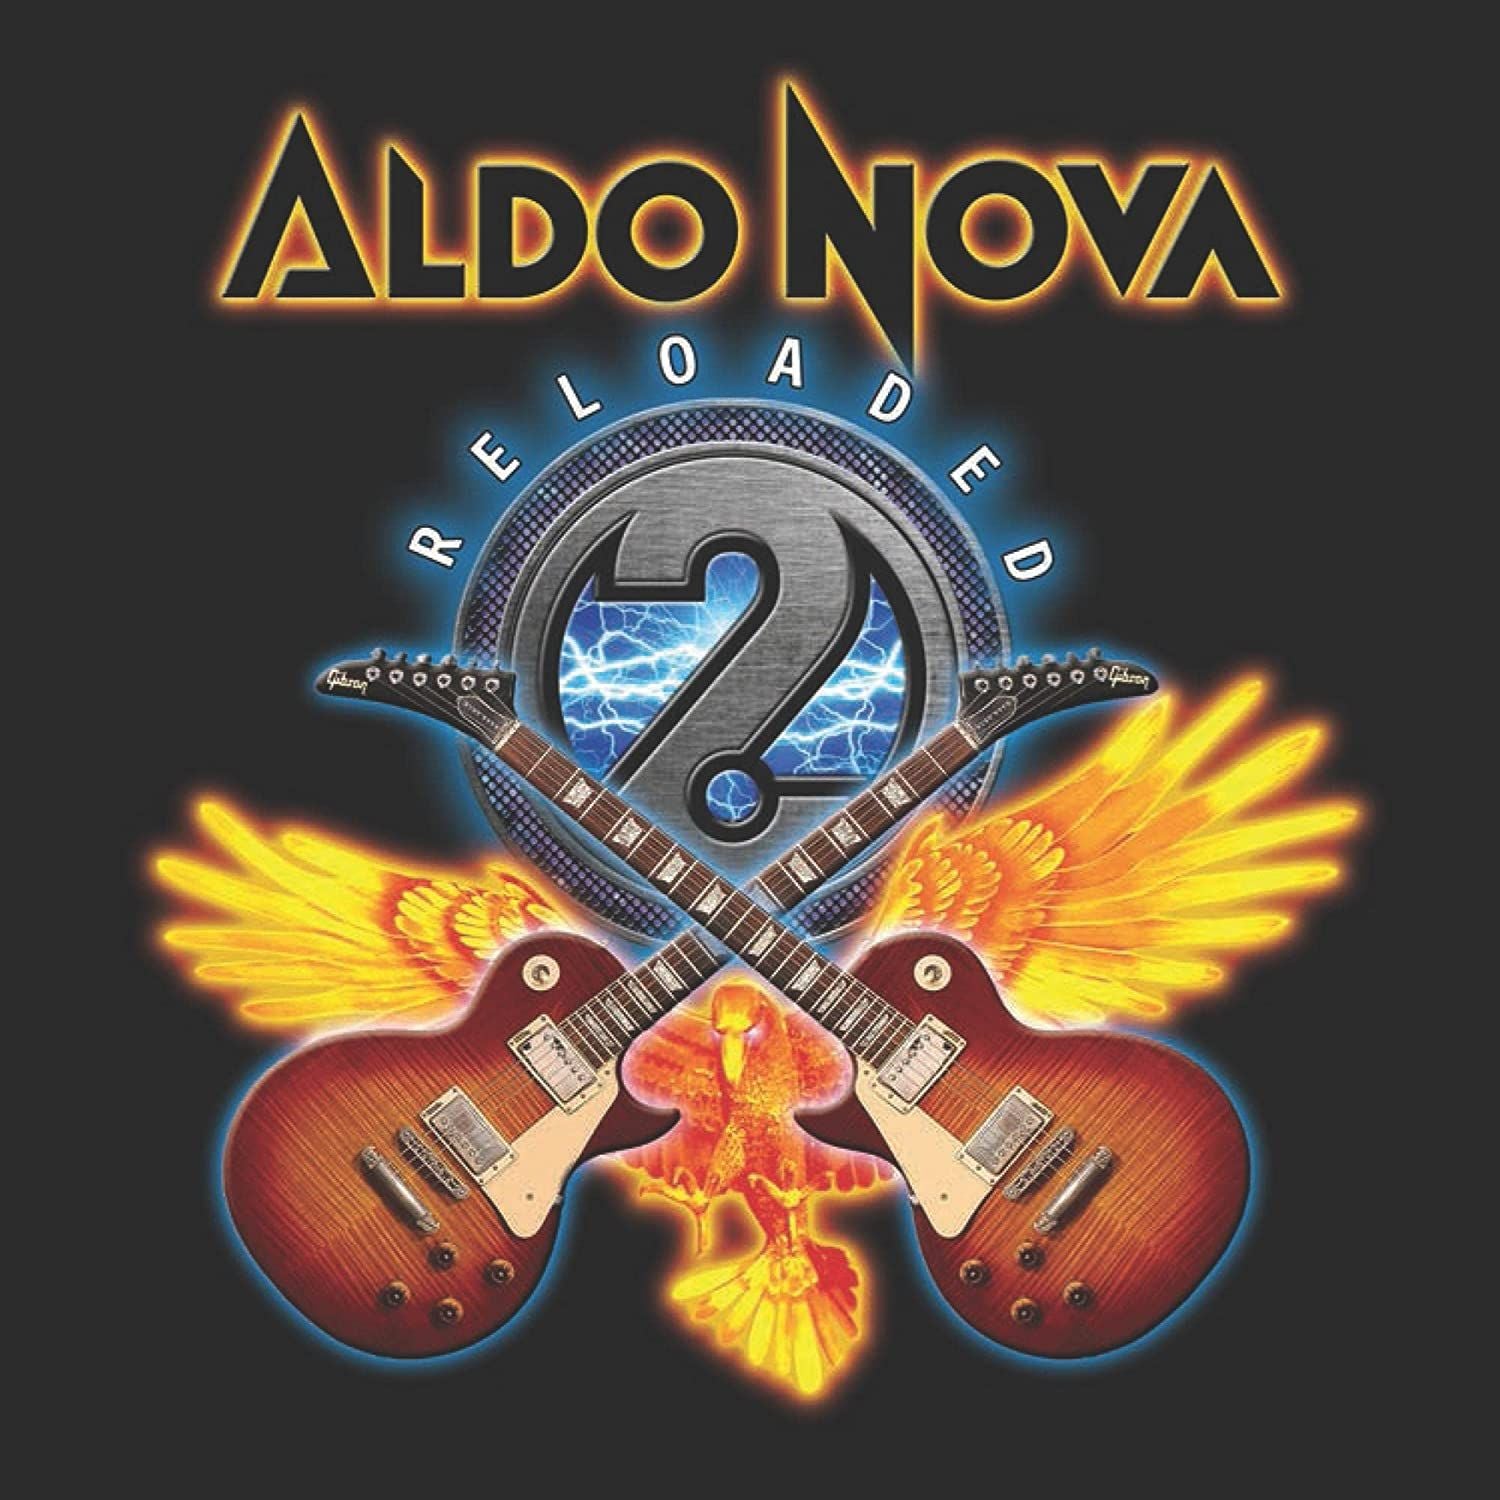 Nova, Aldo - 2.0 Reloaded (3CD) - CD - New